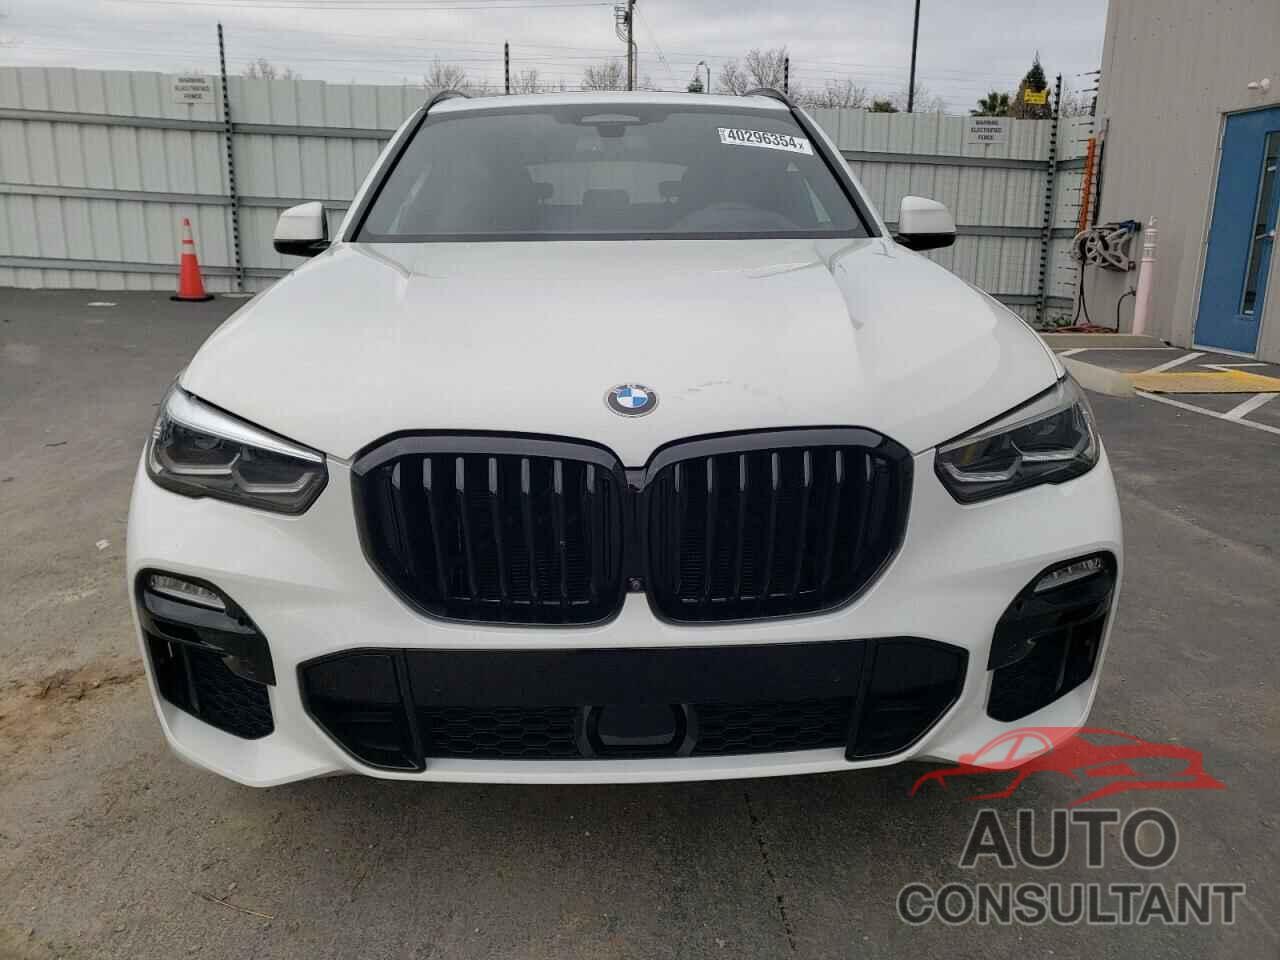 BMW X5 2021 - 5UXCR6C00M9E97586